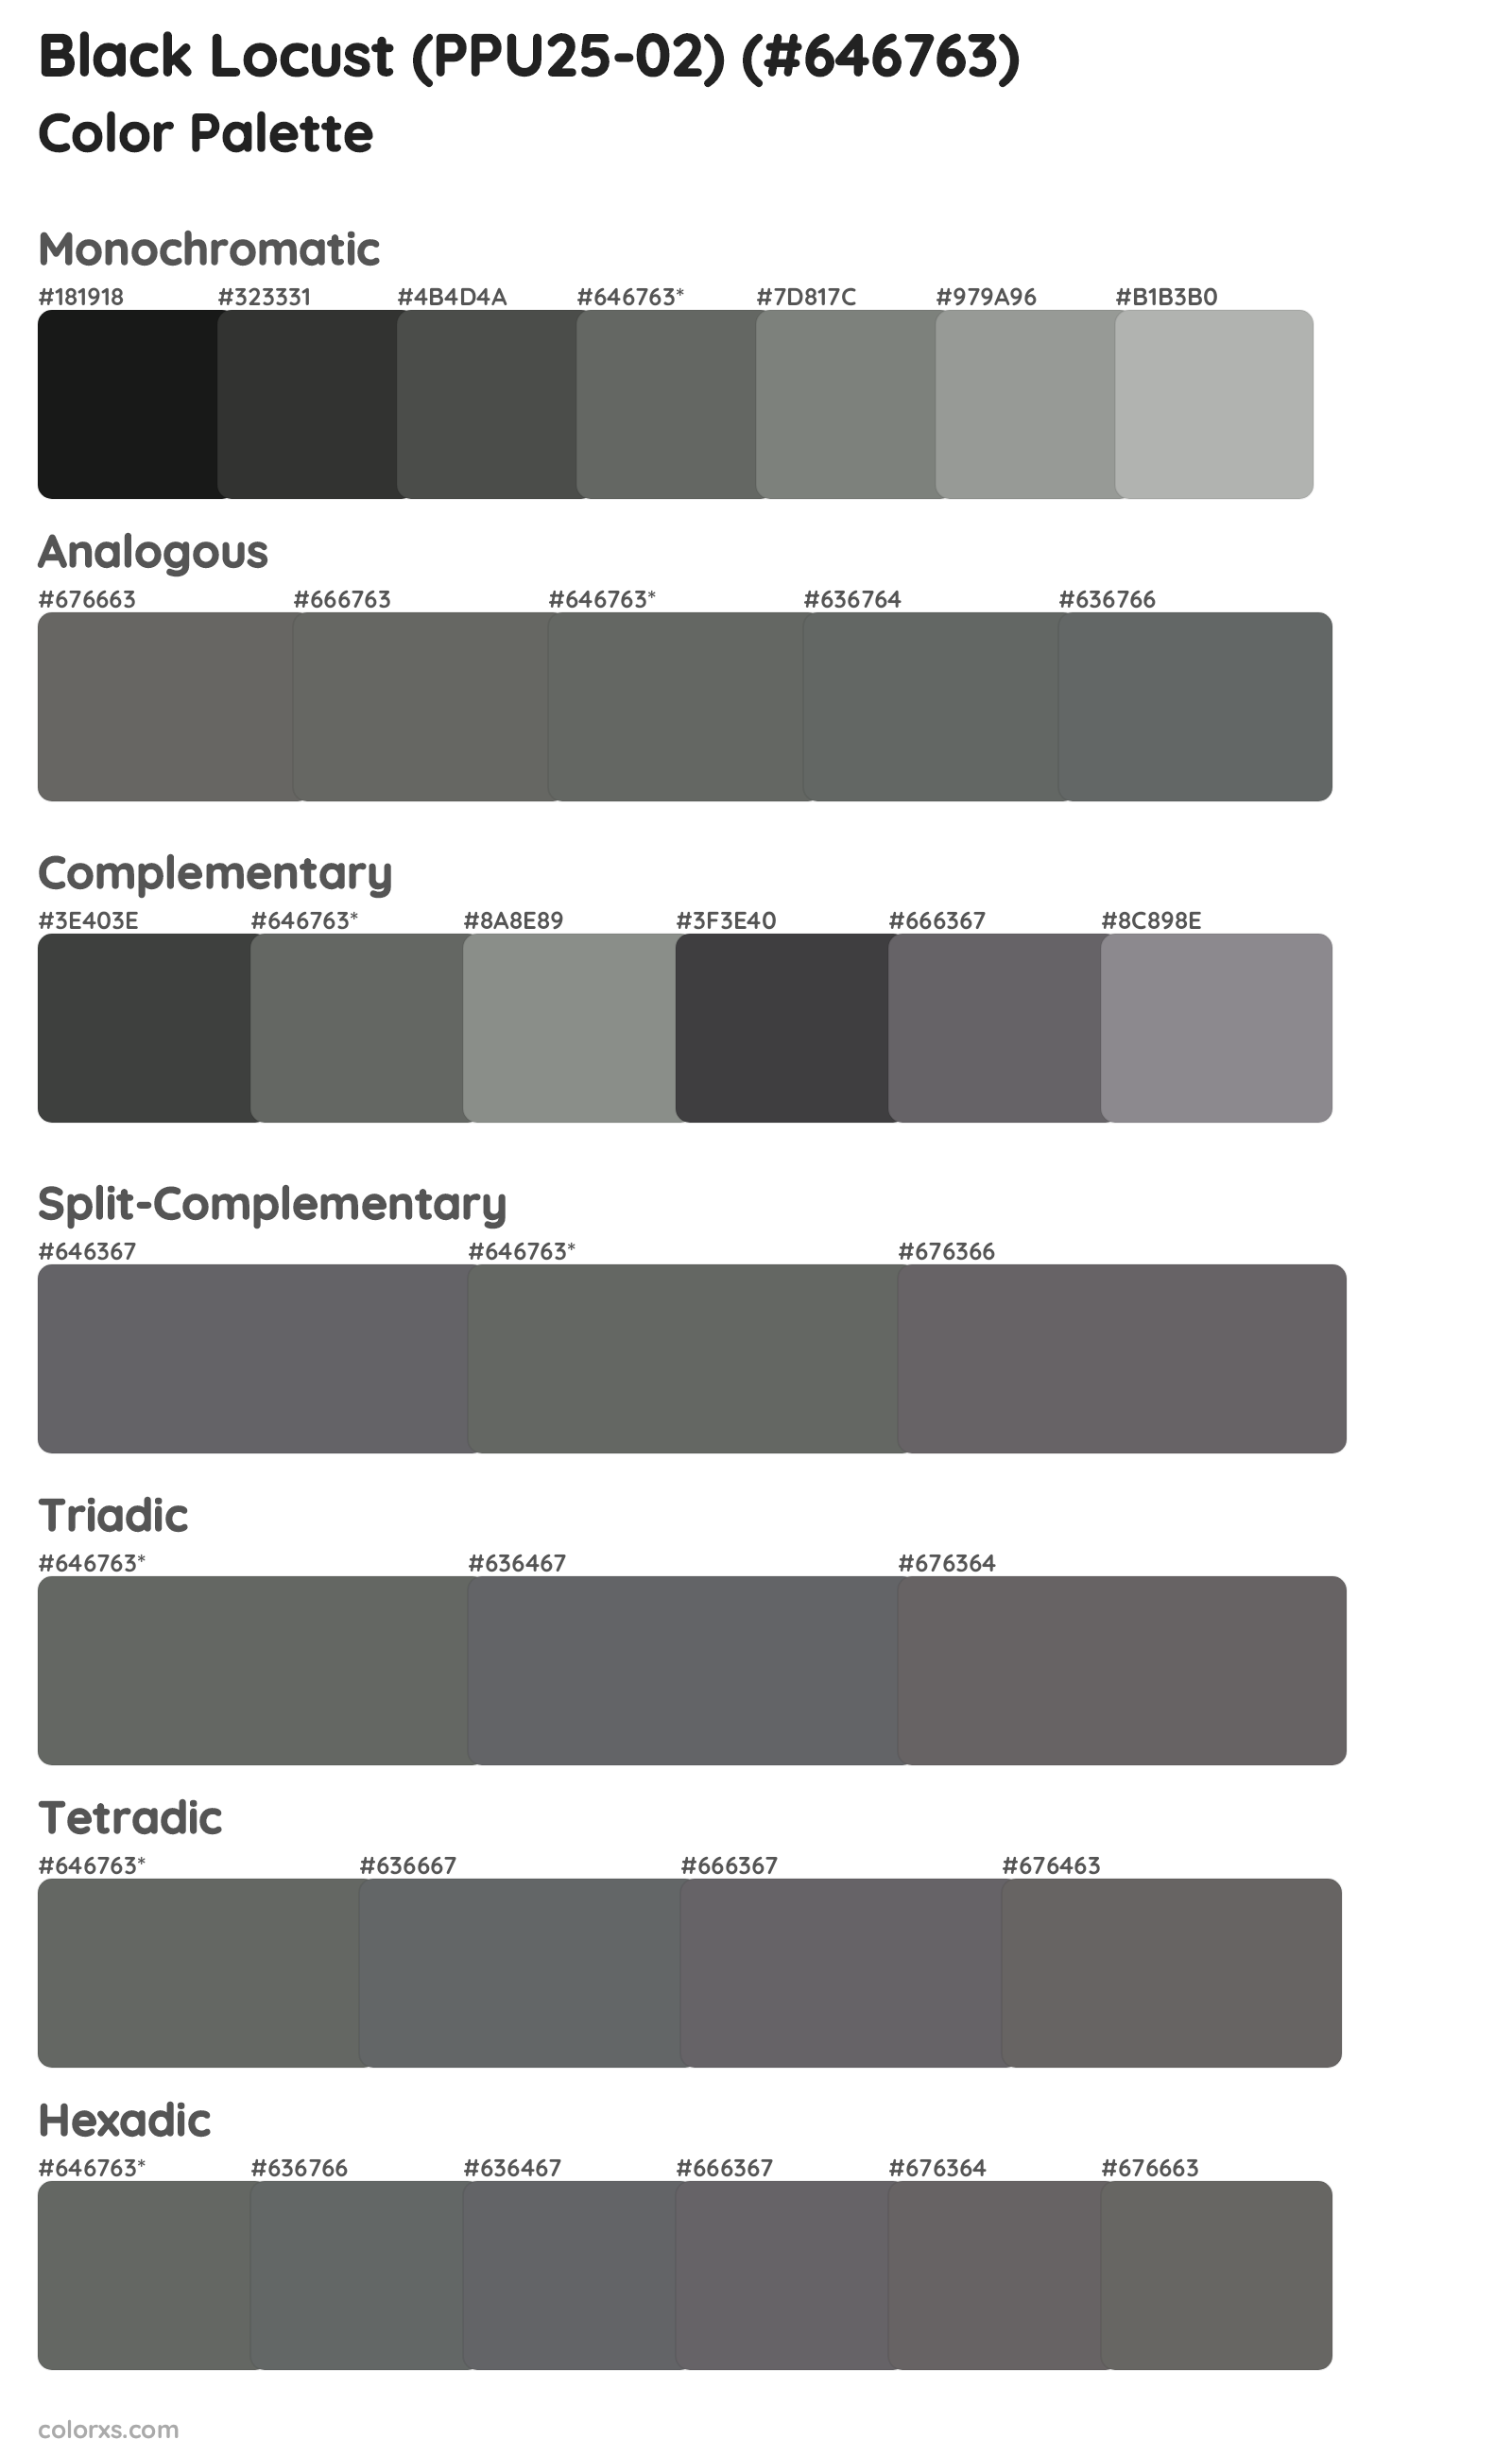 Black Locust (PPU25-02) Color Scheme Palettes